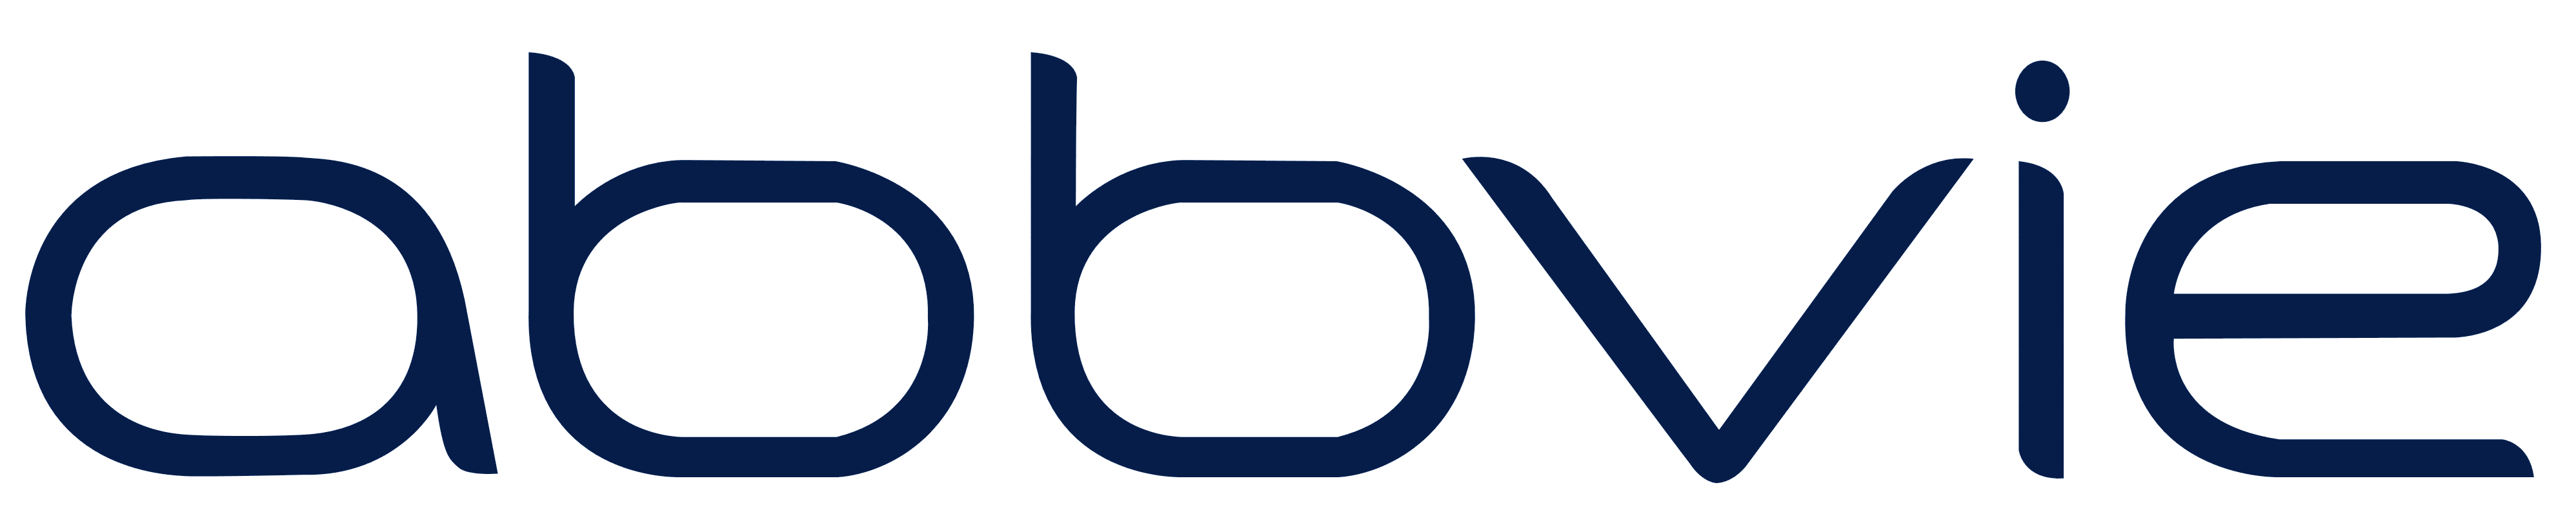 AbbVie_logo_logotype